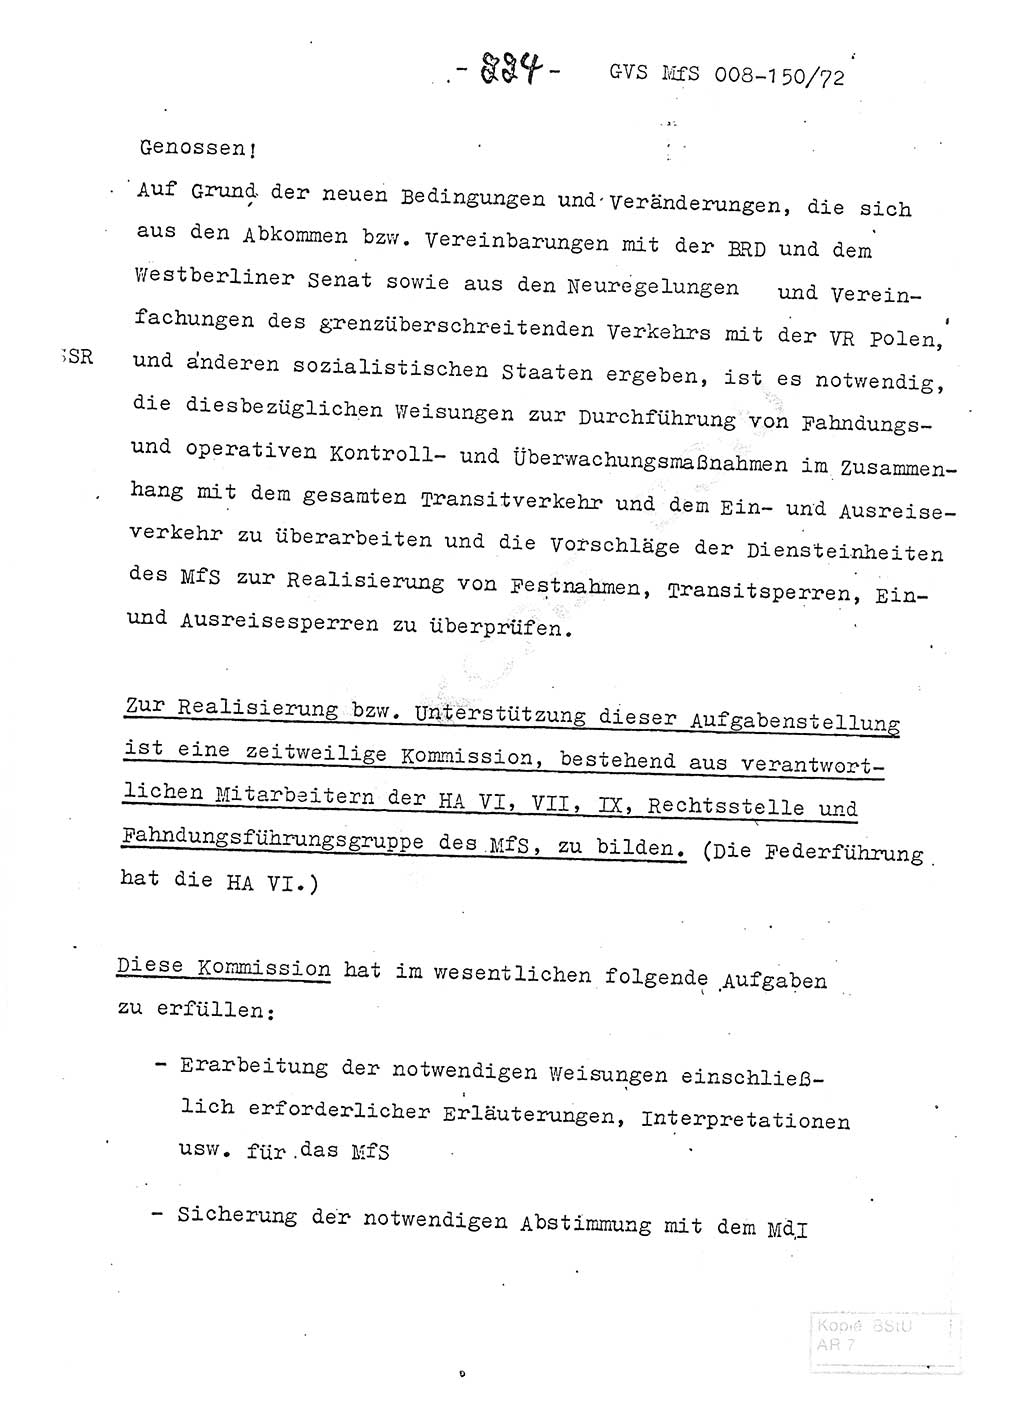 Referat (Entwurf) des Genossen Minister (Generaloberst Erich Mielke) auf der Dienstkonferenz 1972, Ministerium für Staatssicherheit (MfS) [Deutsche Demokratische Republik (DDR)], Der Minister, Geheime Verschlußsache (GVS) 008-150/72, Berlin 25.2.1972, Seite 224 (Ref. Entw. DK MfS DDR Min. GVS 008-150/72 1972, S. 224)